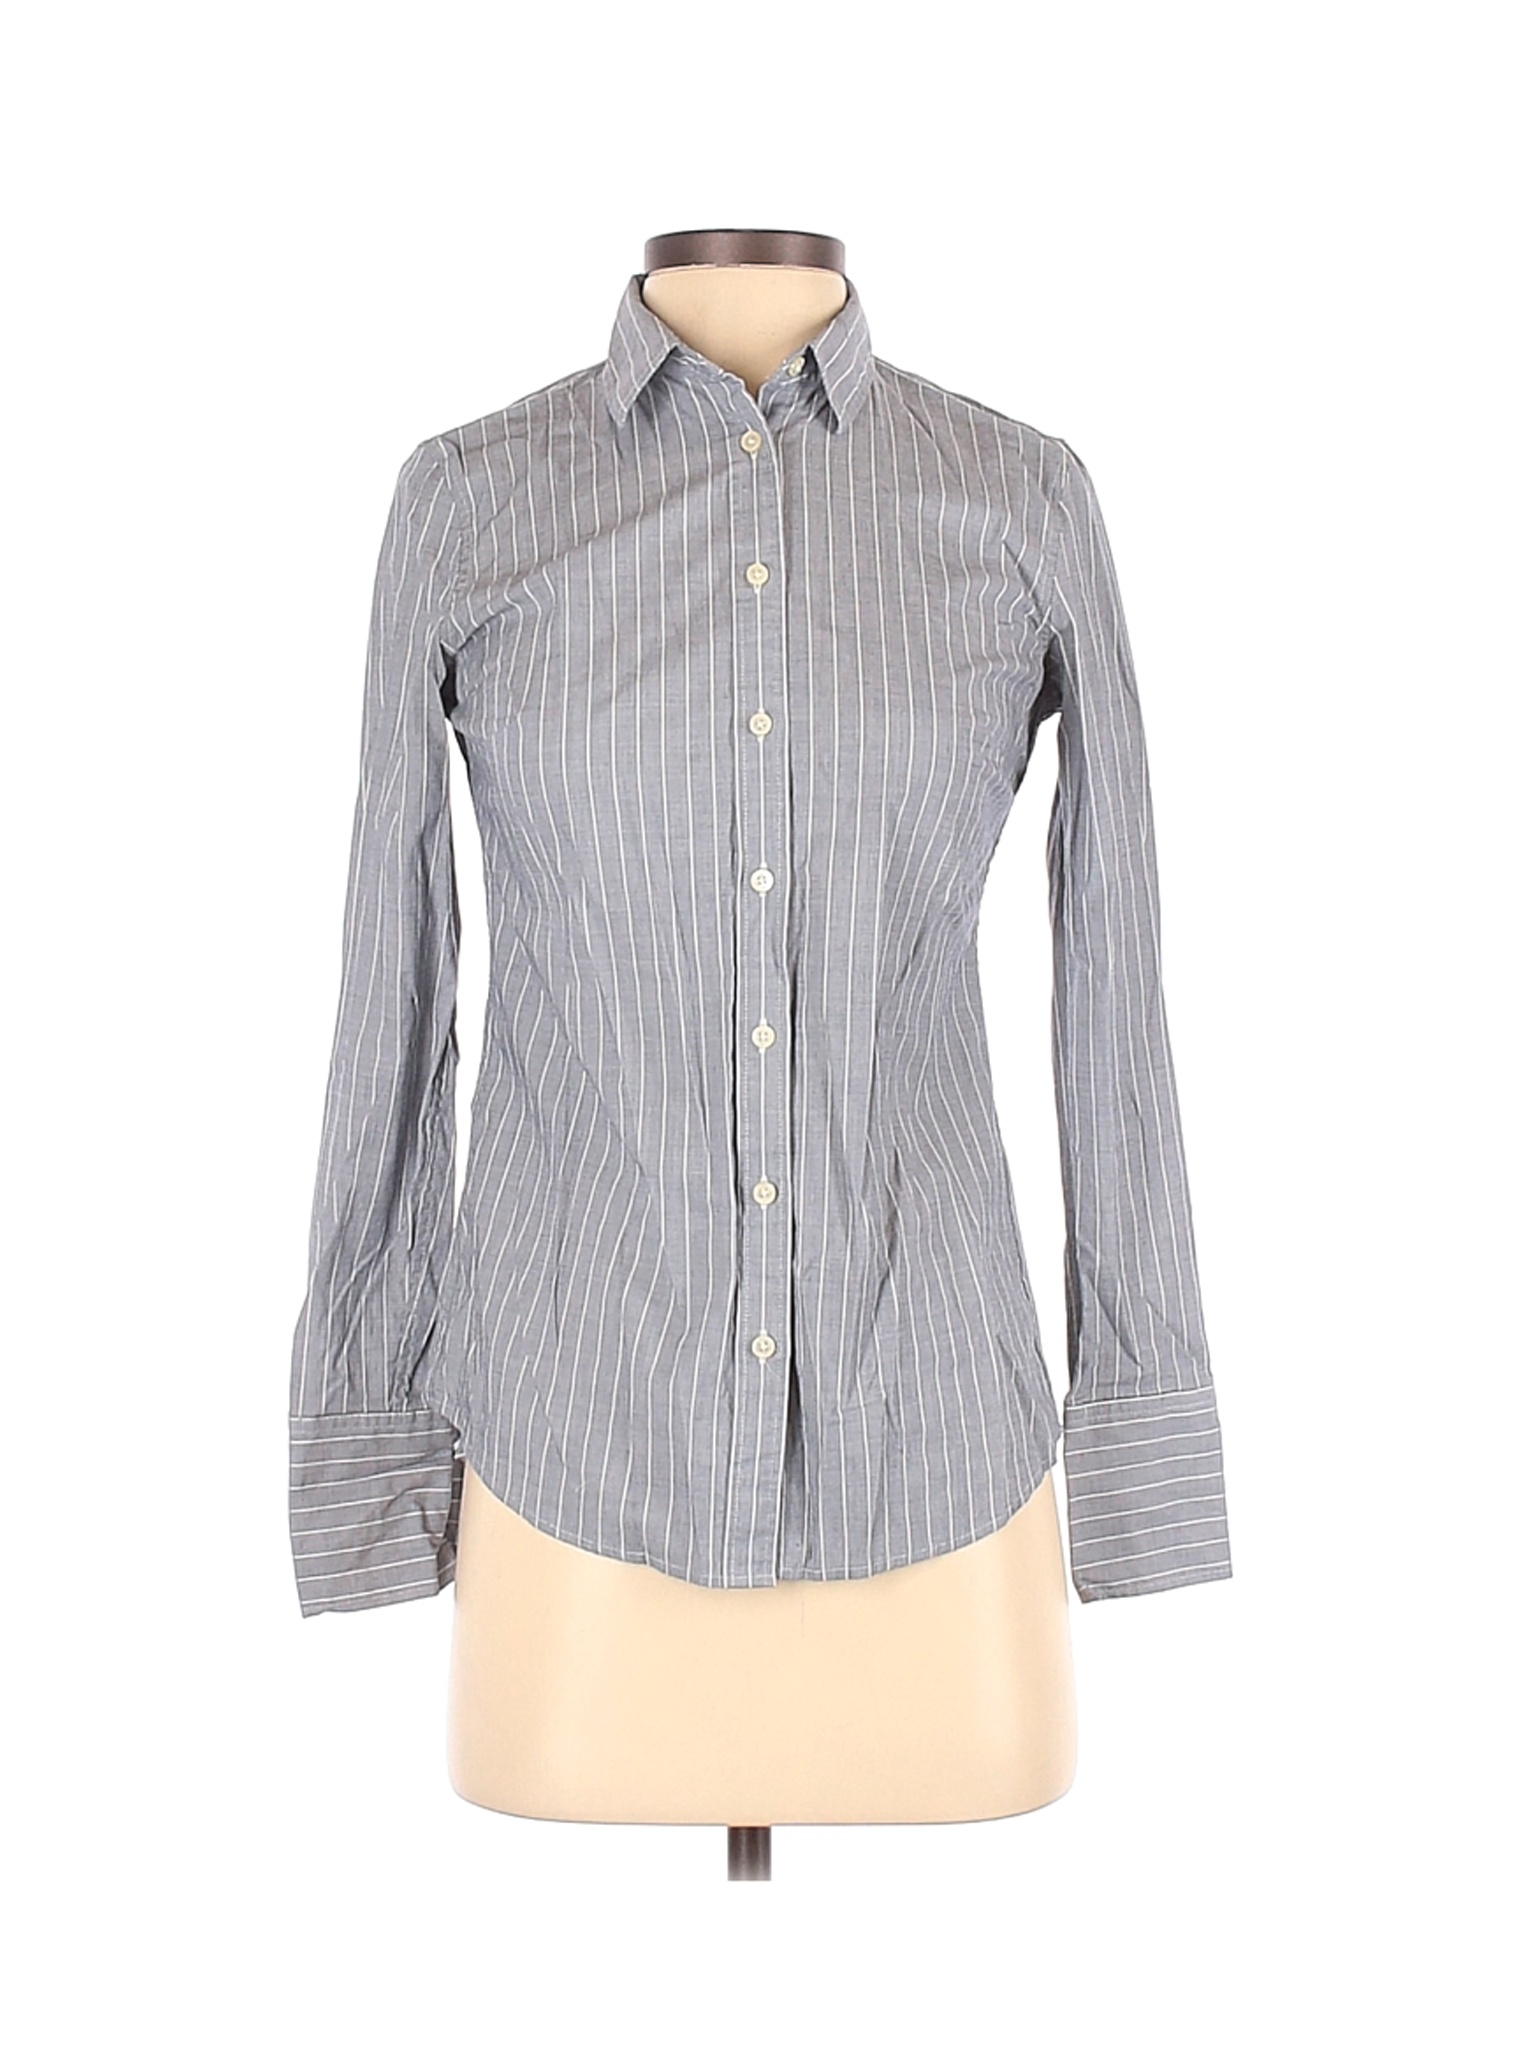 Banana Republic Women Gray Long Sleeve Button-Down Shirt 0 | eBay